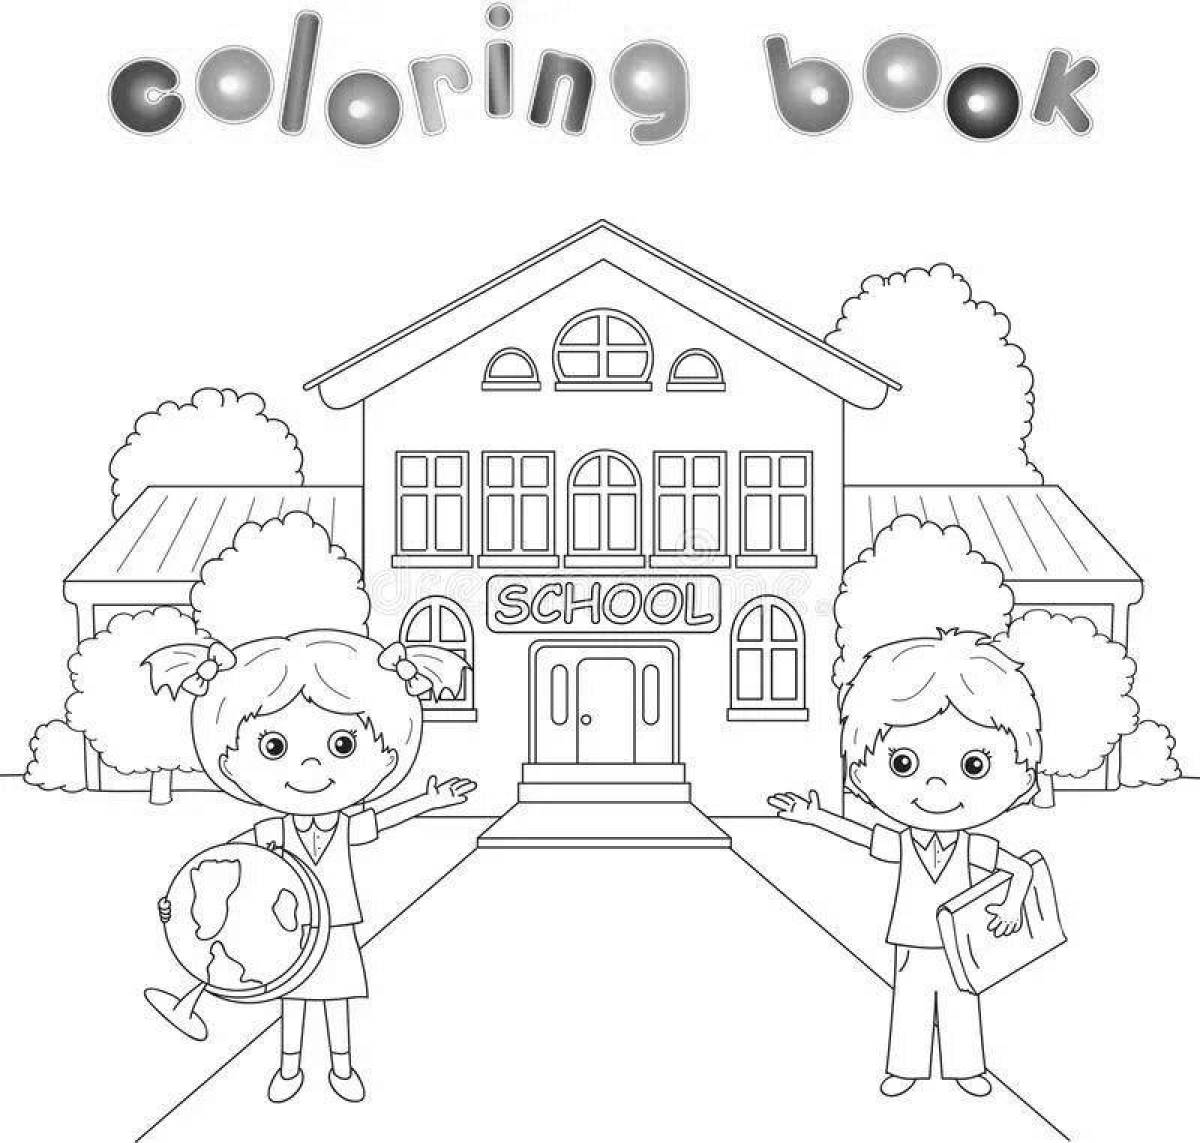 Coloring page happy school building